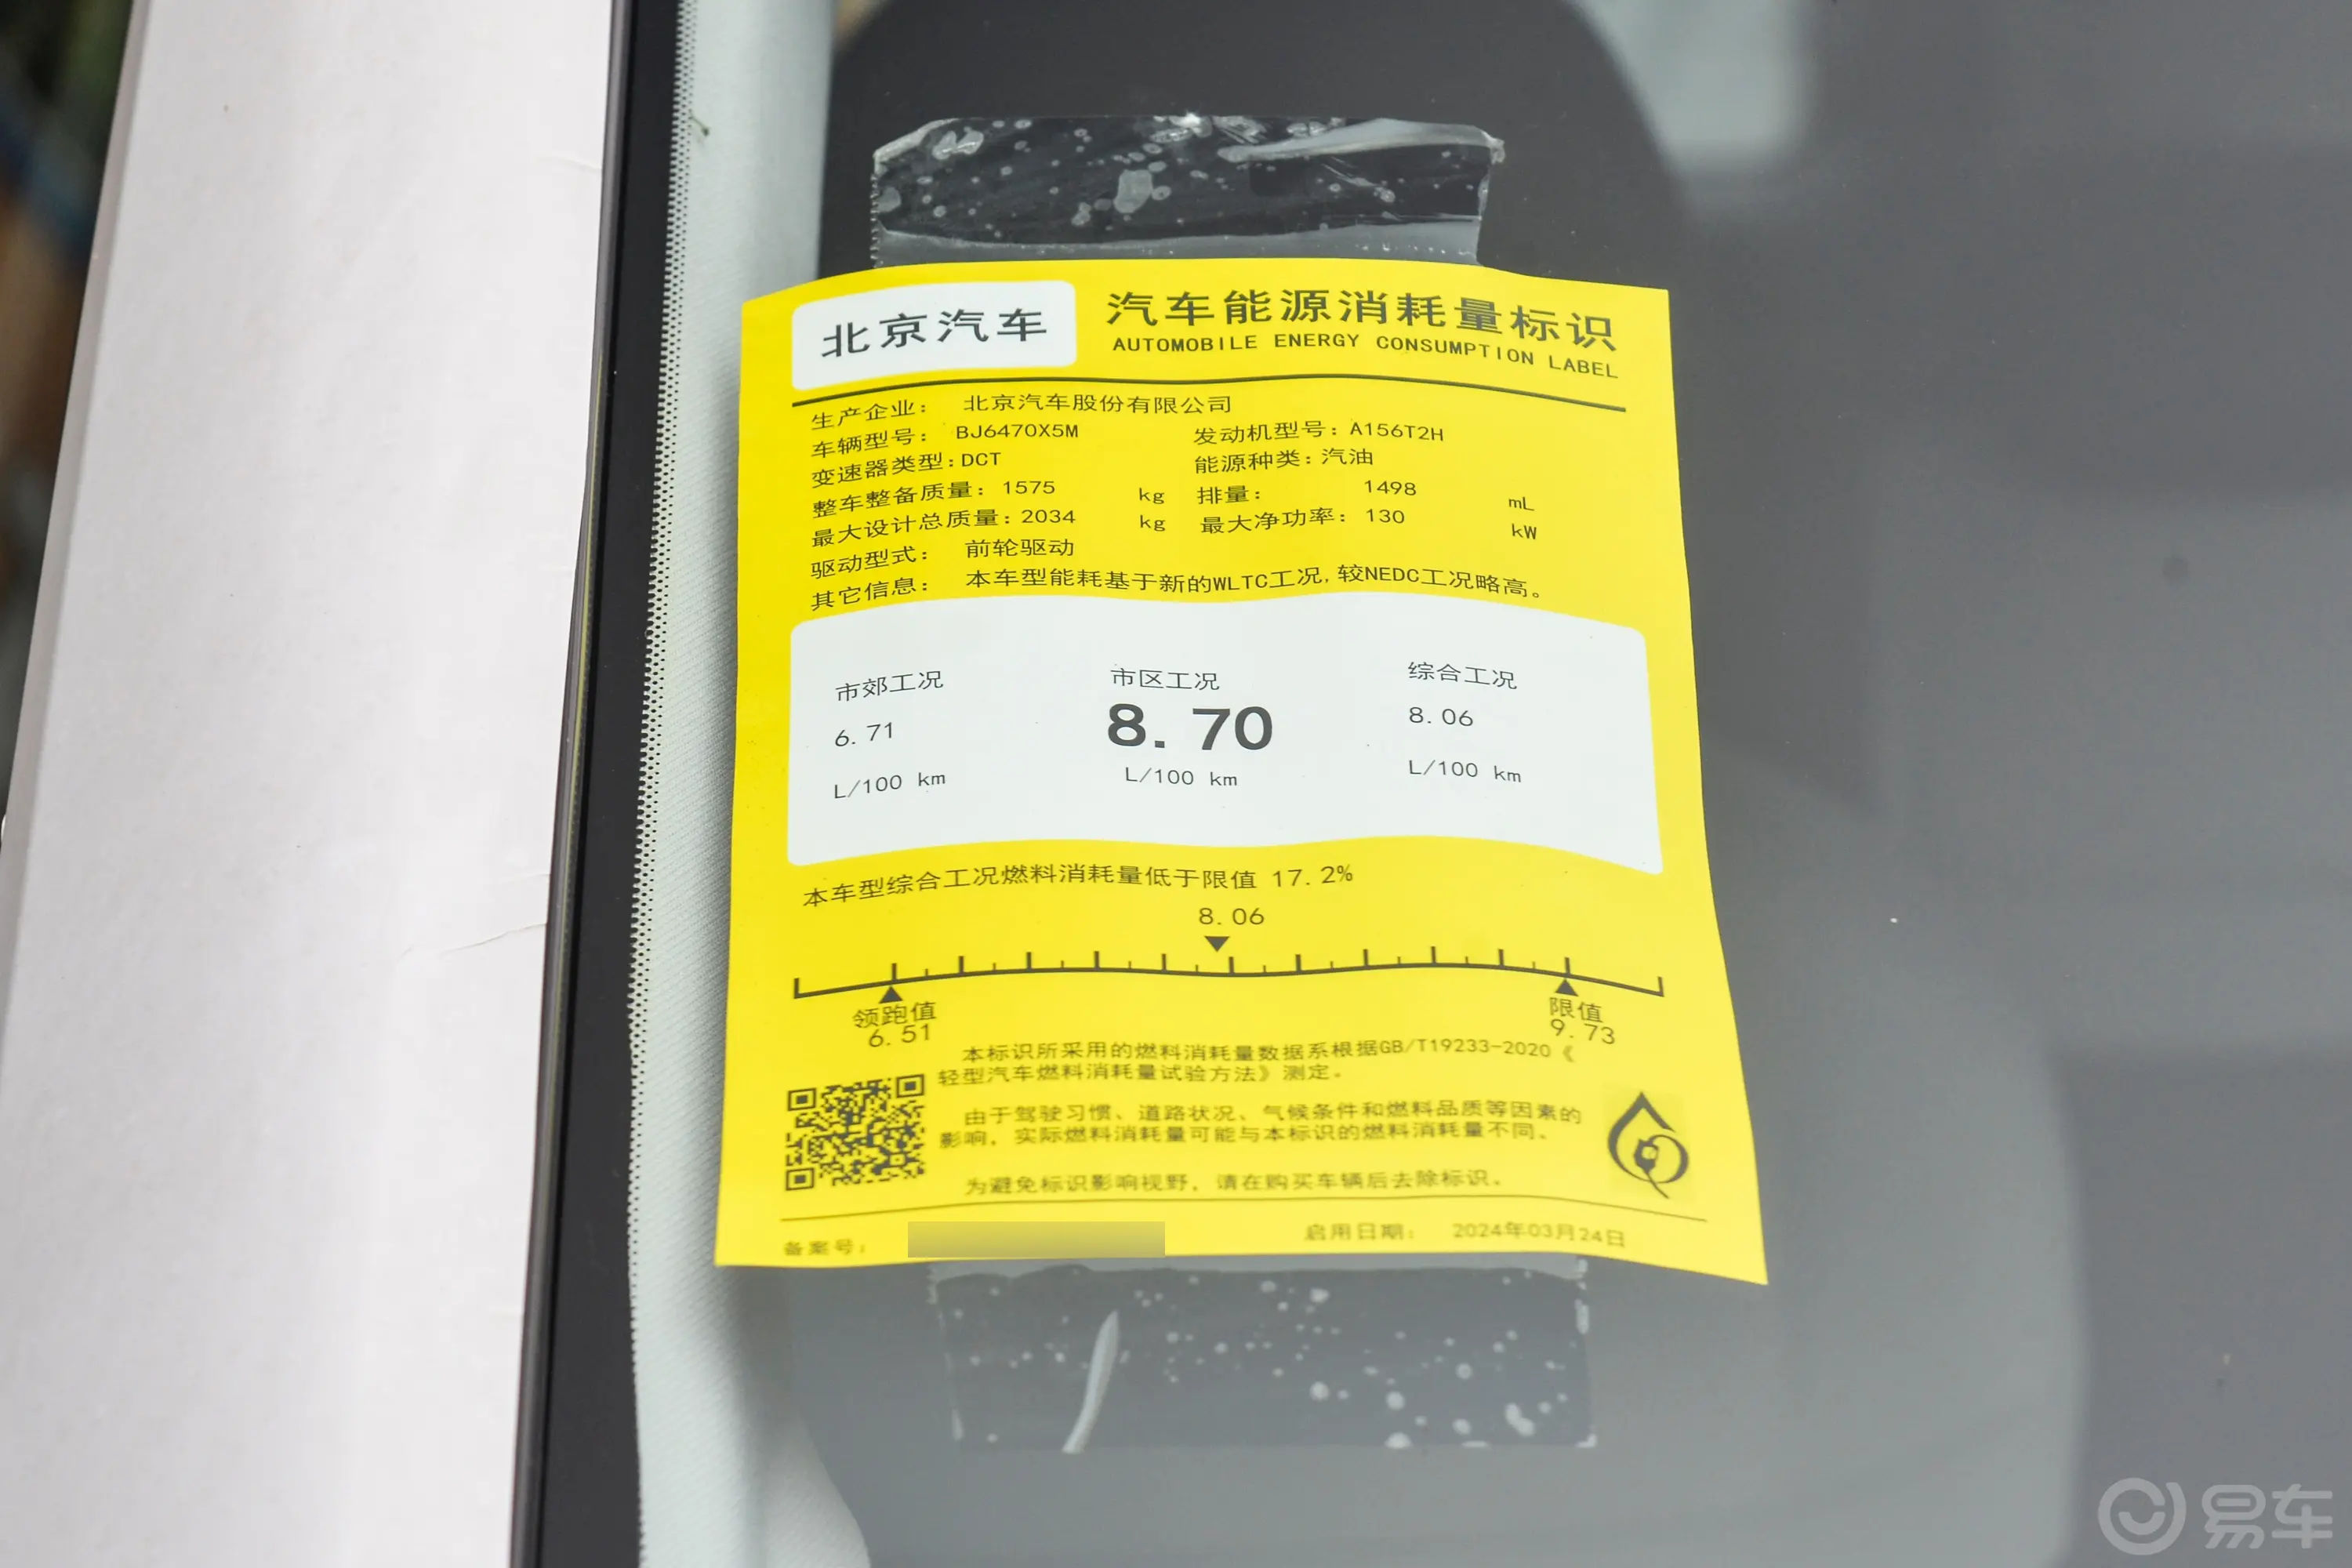 北京BJ301.5T 两驱轻野Air版环保标识